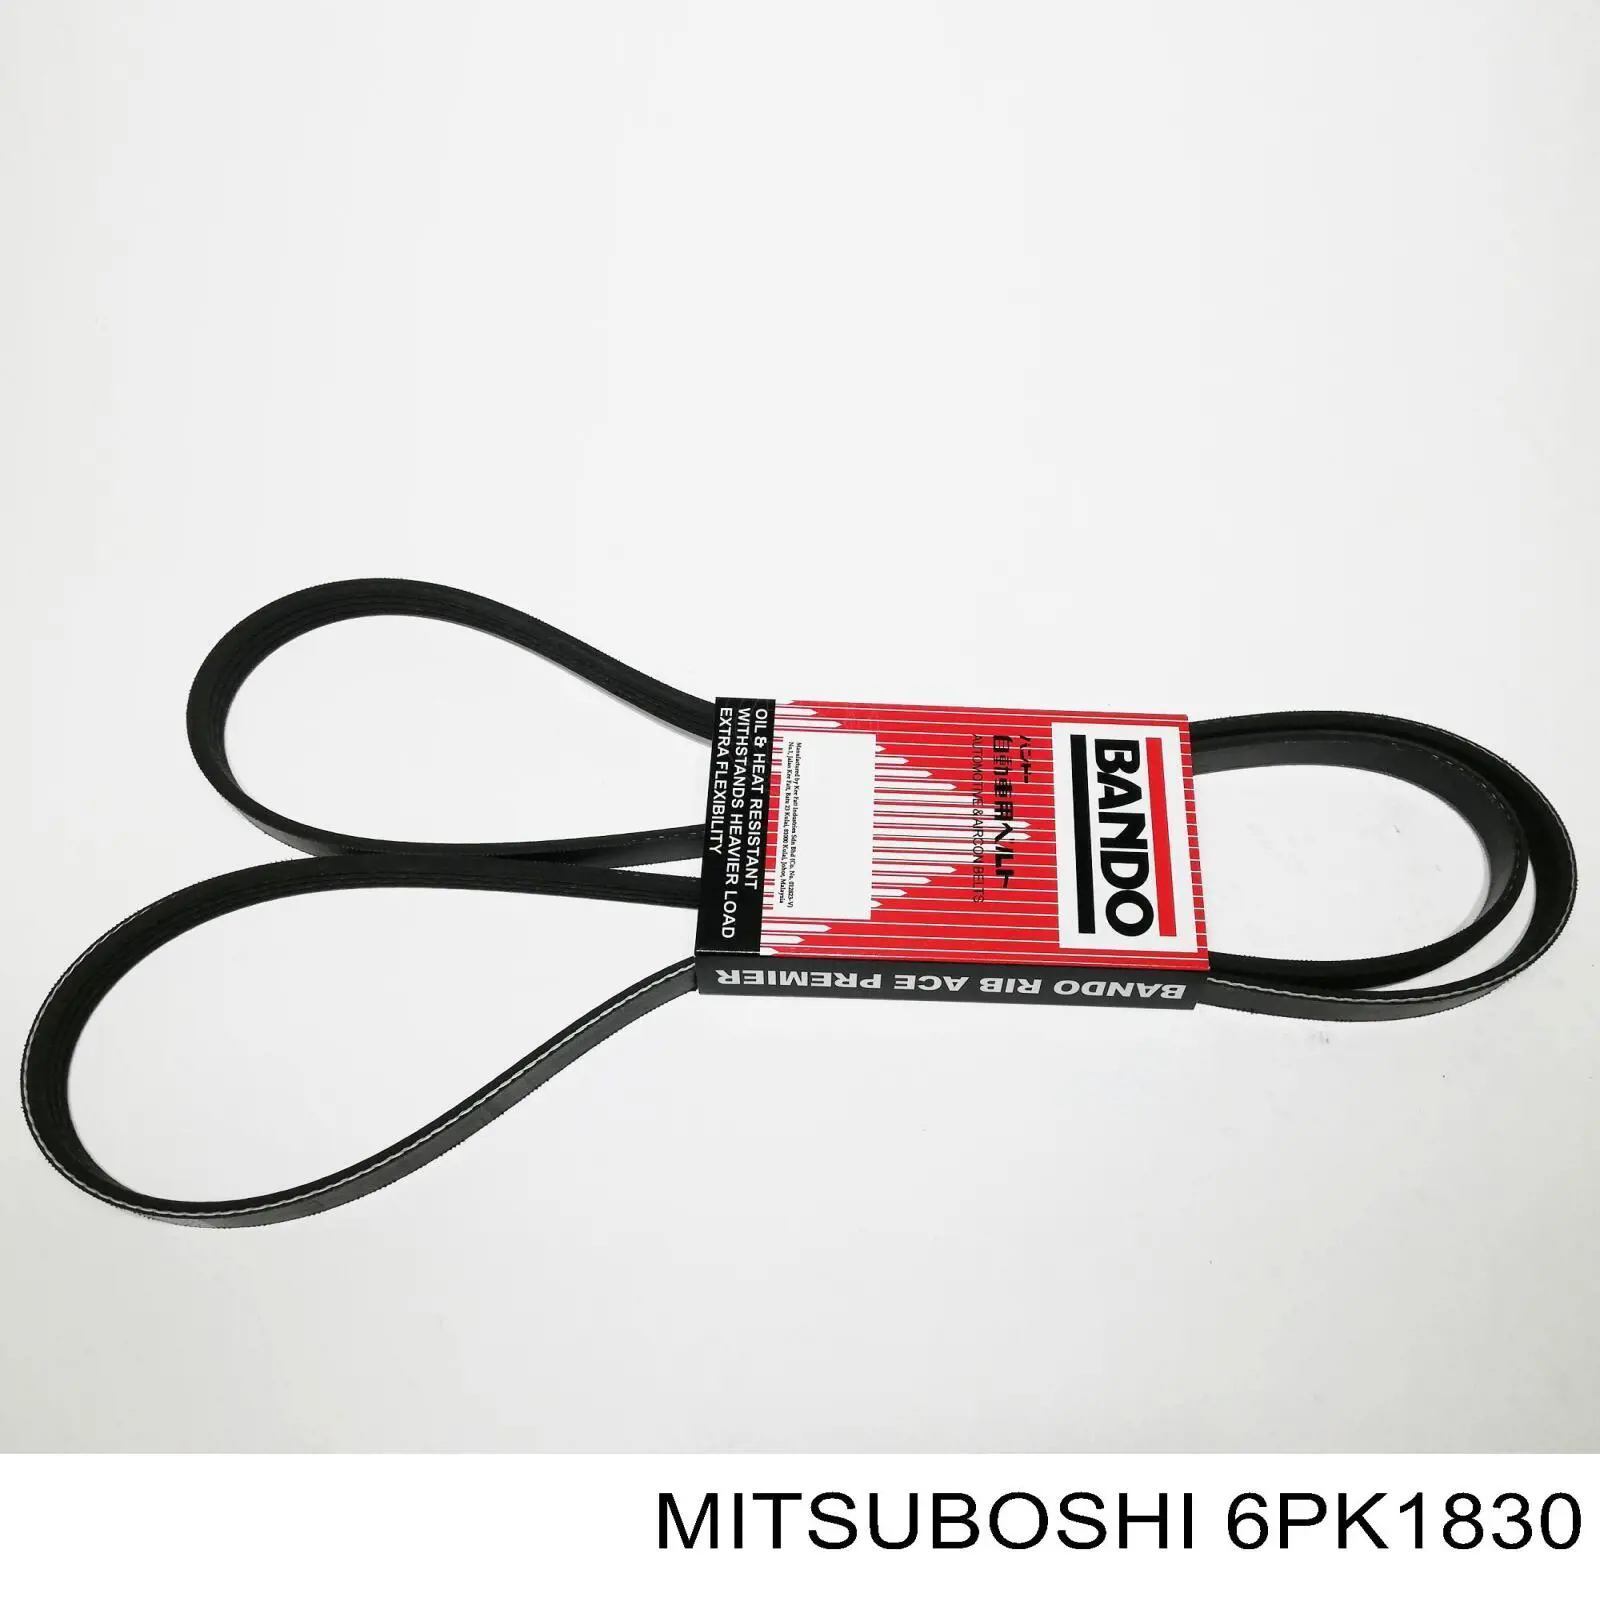 6PK1830 Mitsuboshi correia dos conjuntos de transmissão